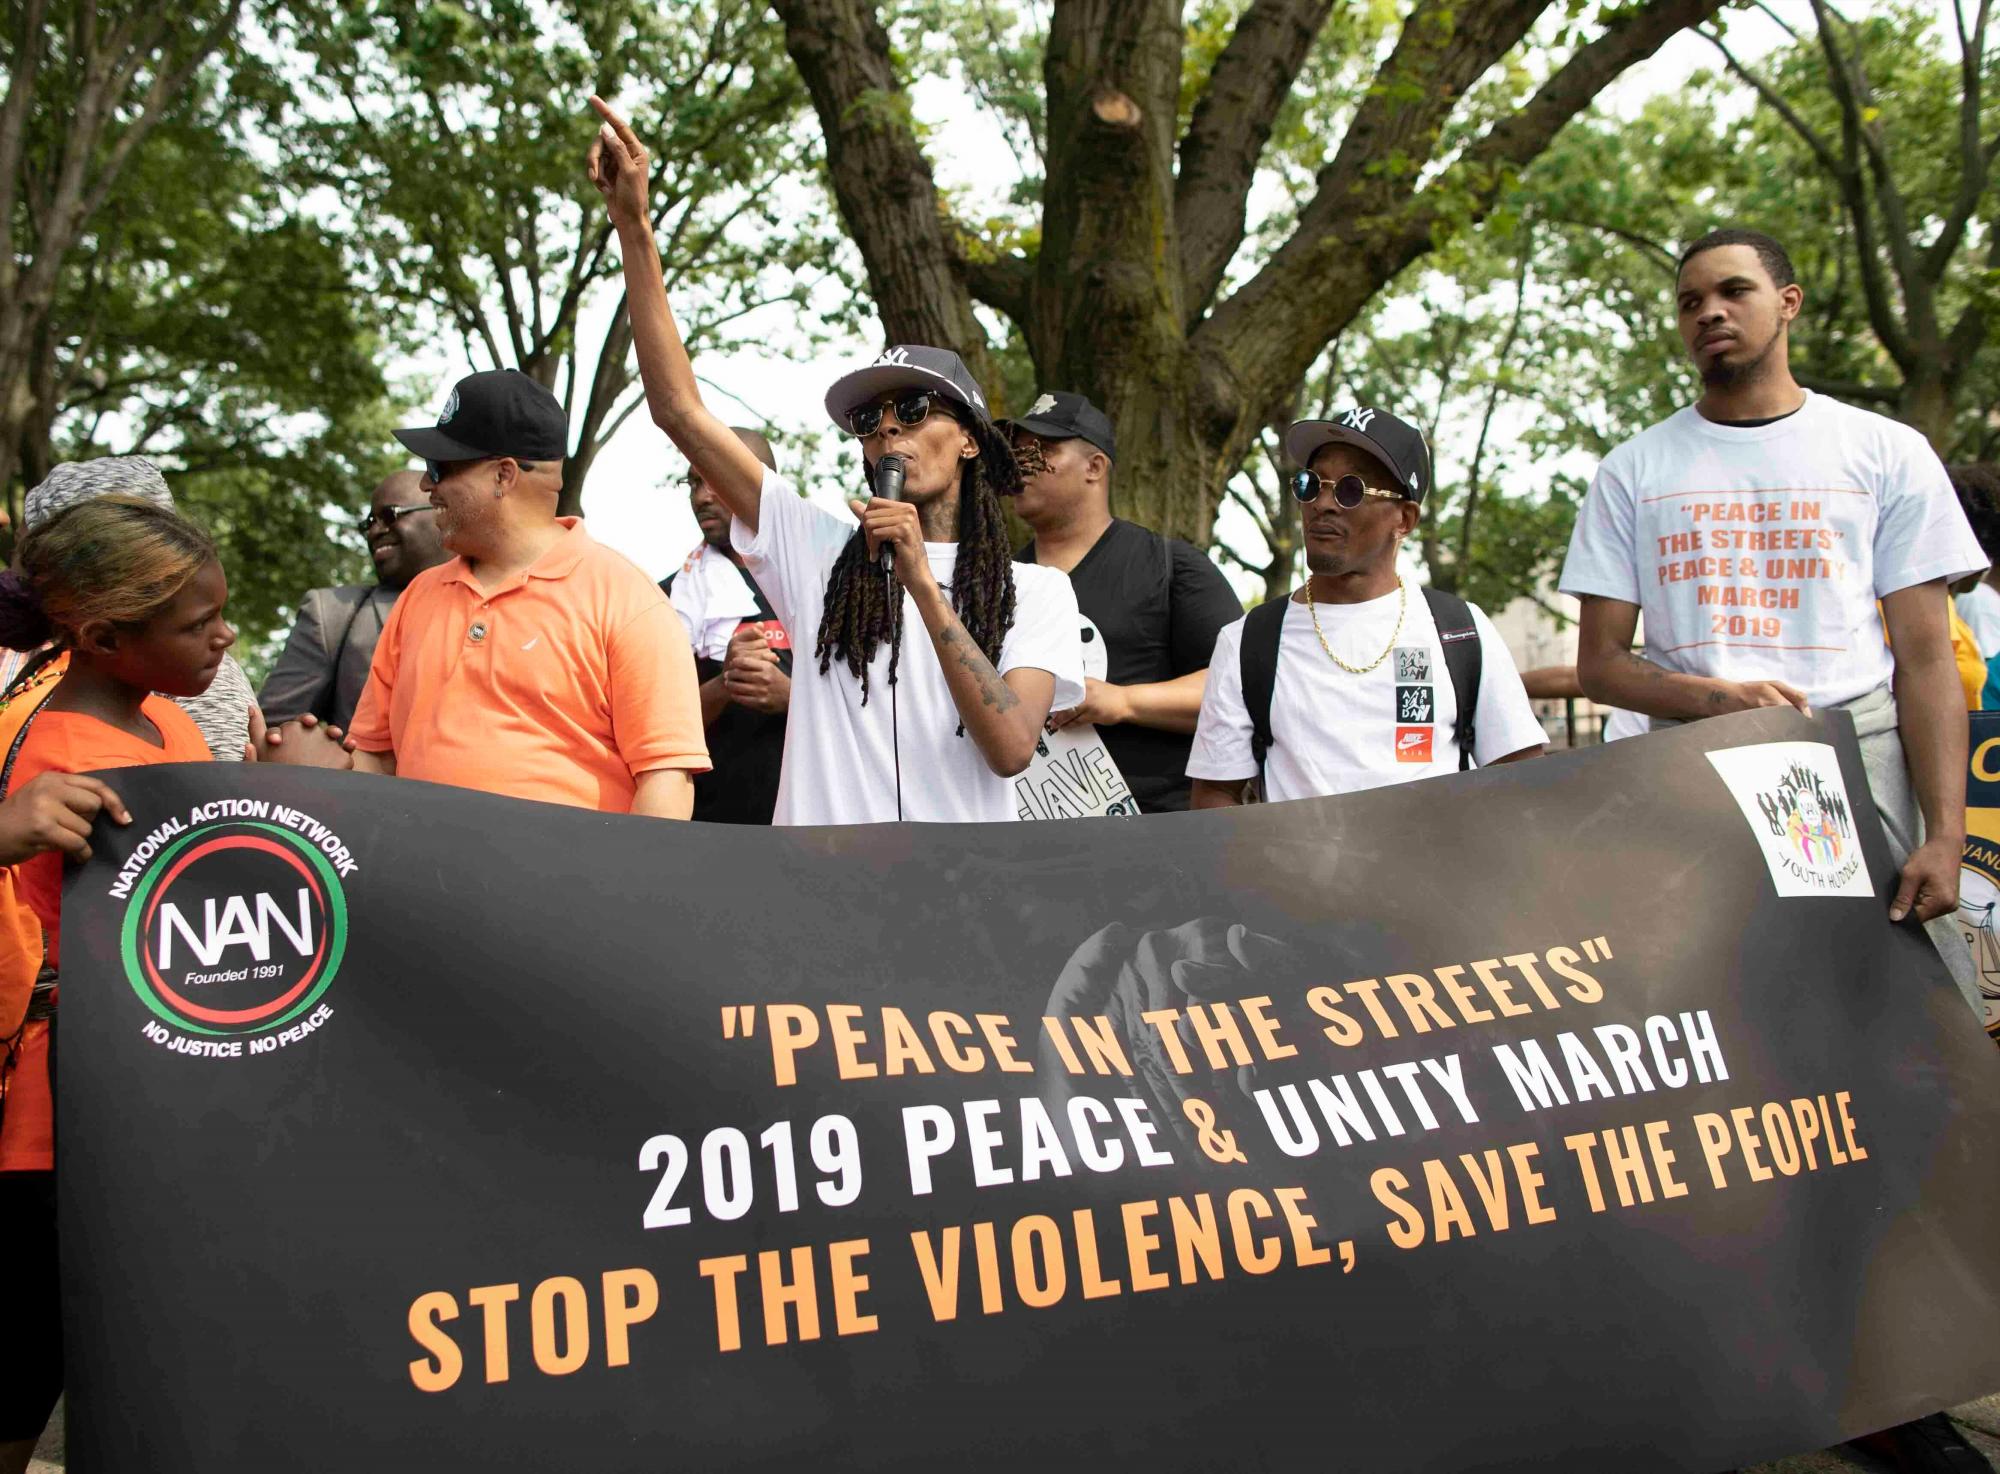 El activista y las personas que han sido afectadas por la violencia con armas de fuego participan en una marcha y se unen para pedir el fin de la violencia con armas de fuego en las calles de la ciudad de Nueva York, el sábado 1 de junio de 2019, en Harlem. La Red de Acción Nacional se unió a otros activistas el sábado para una marcha en Harlem para pedir la paz y la unidad.